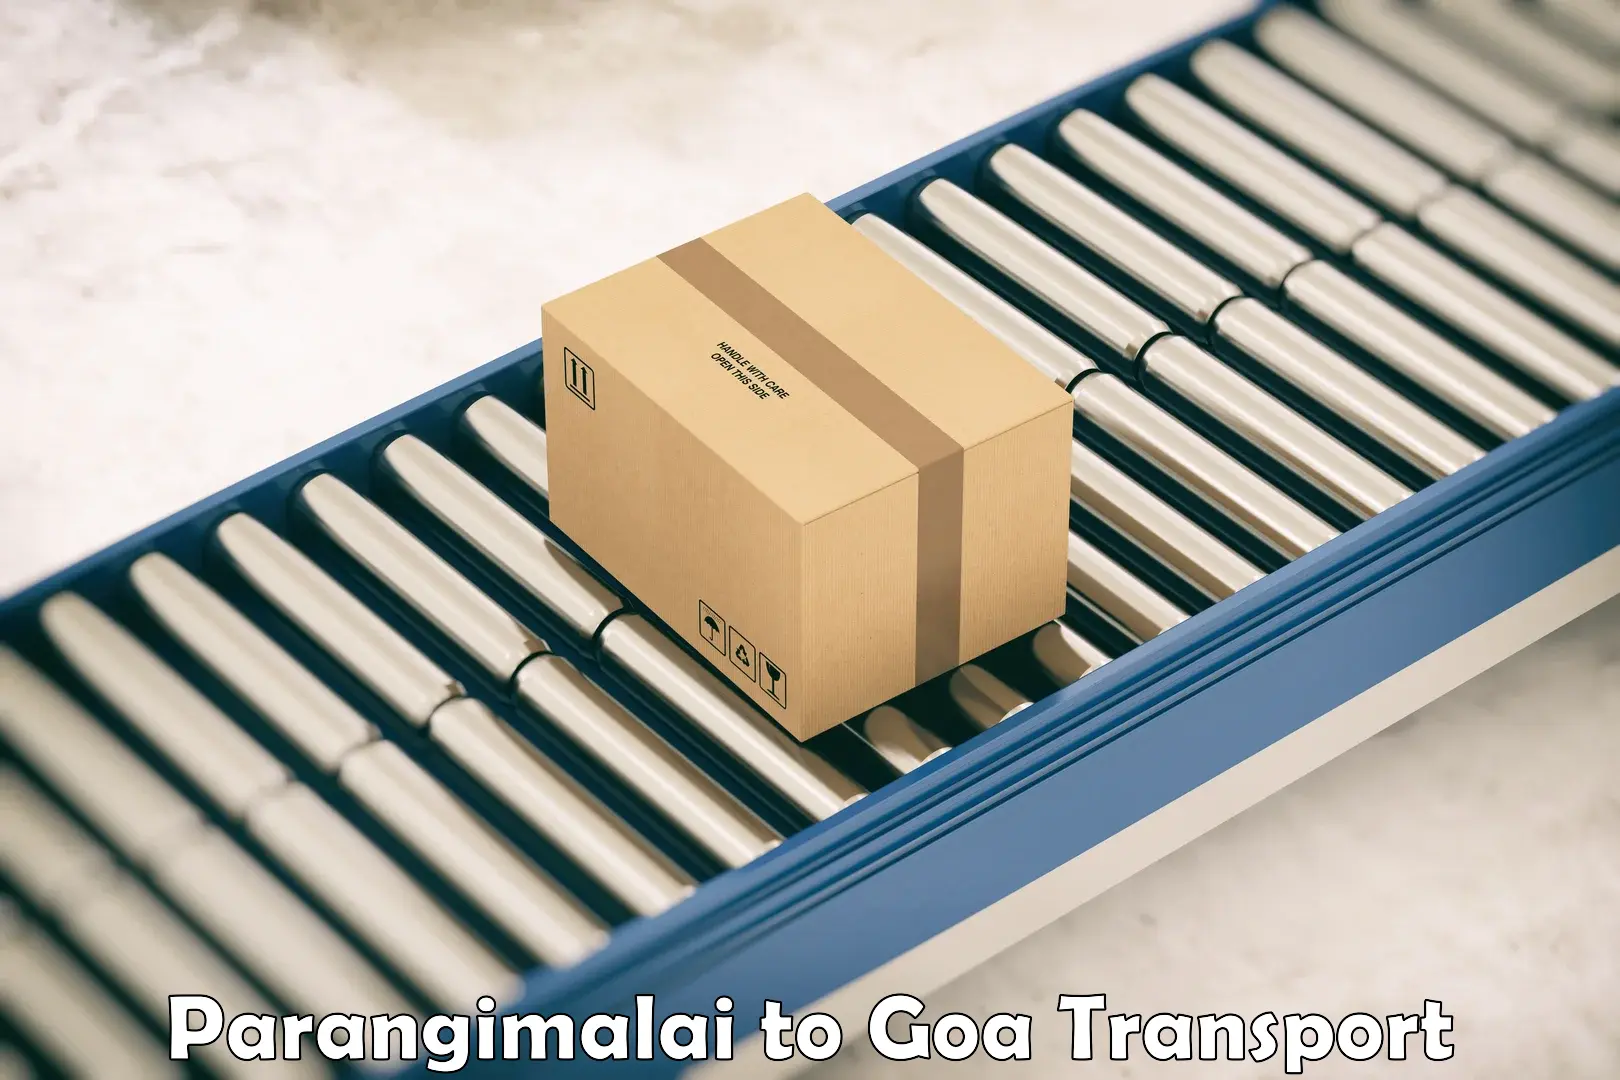 Lorry transport service Parangimalai to Goa